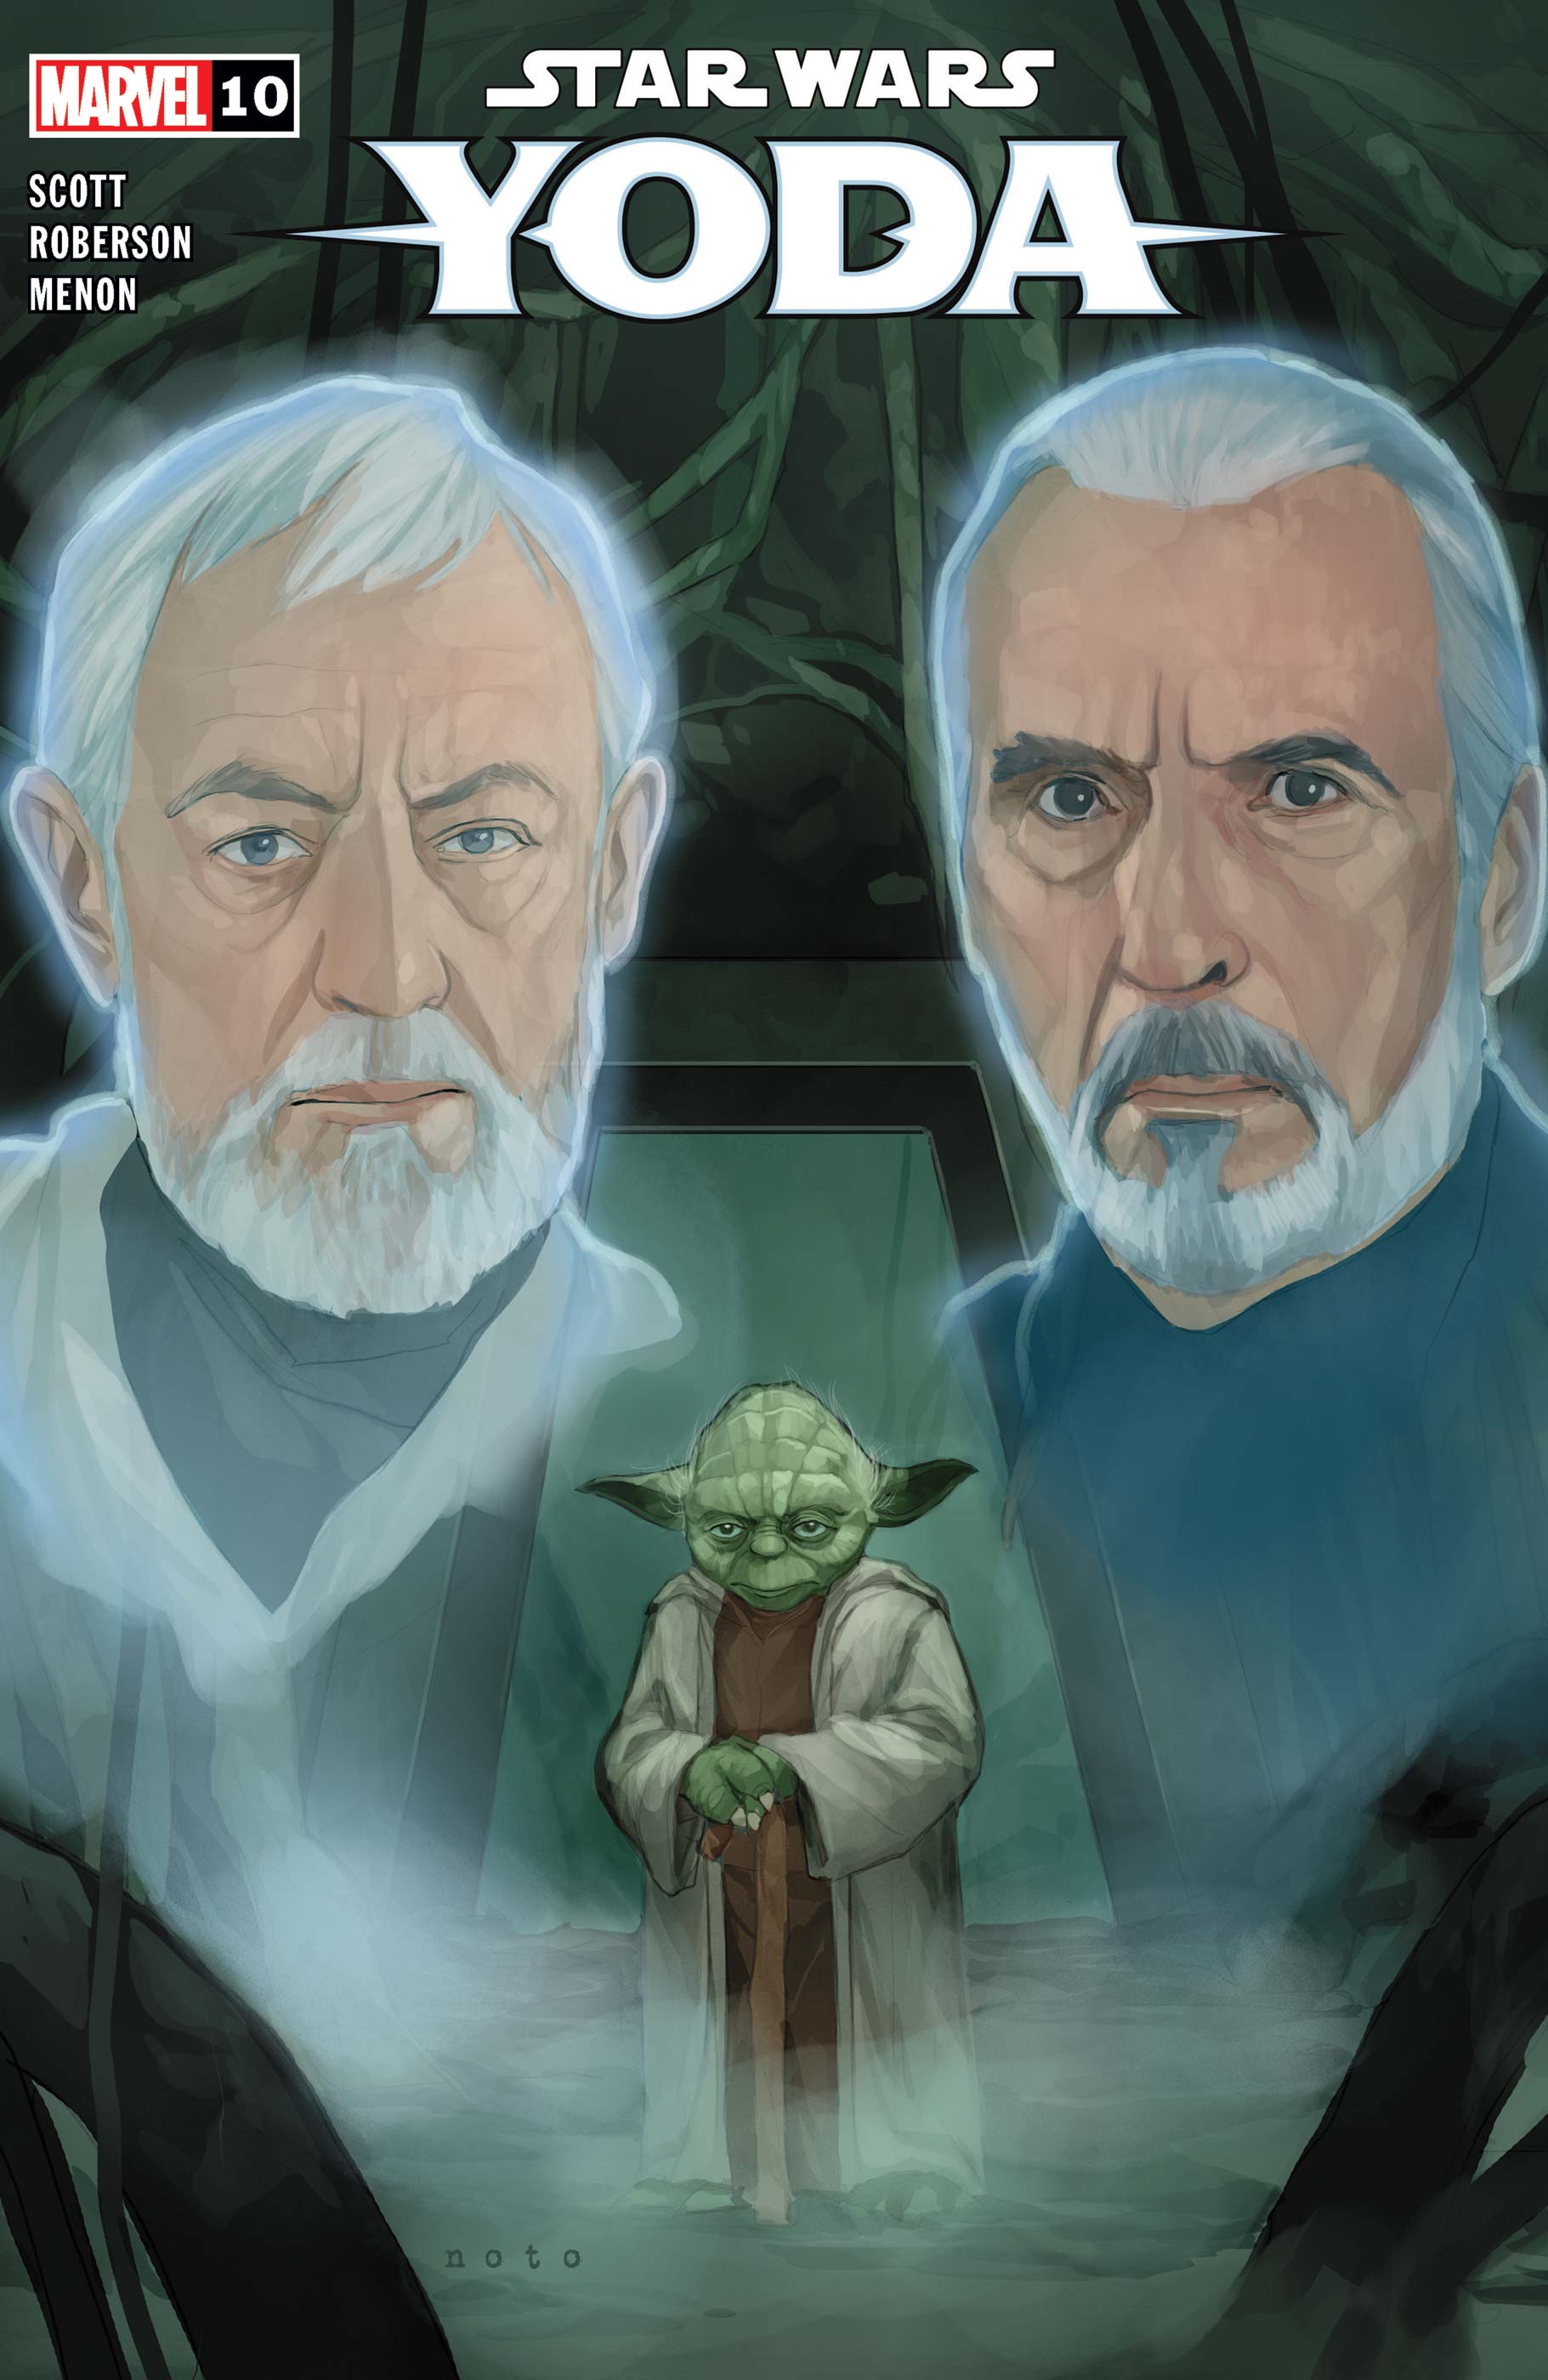 Star Wars: Yoda (2022) #10